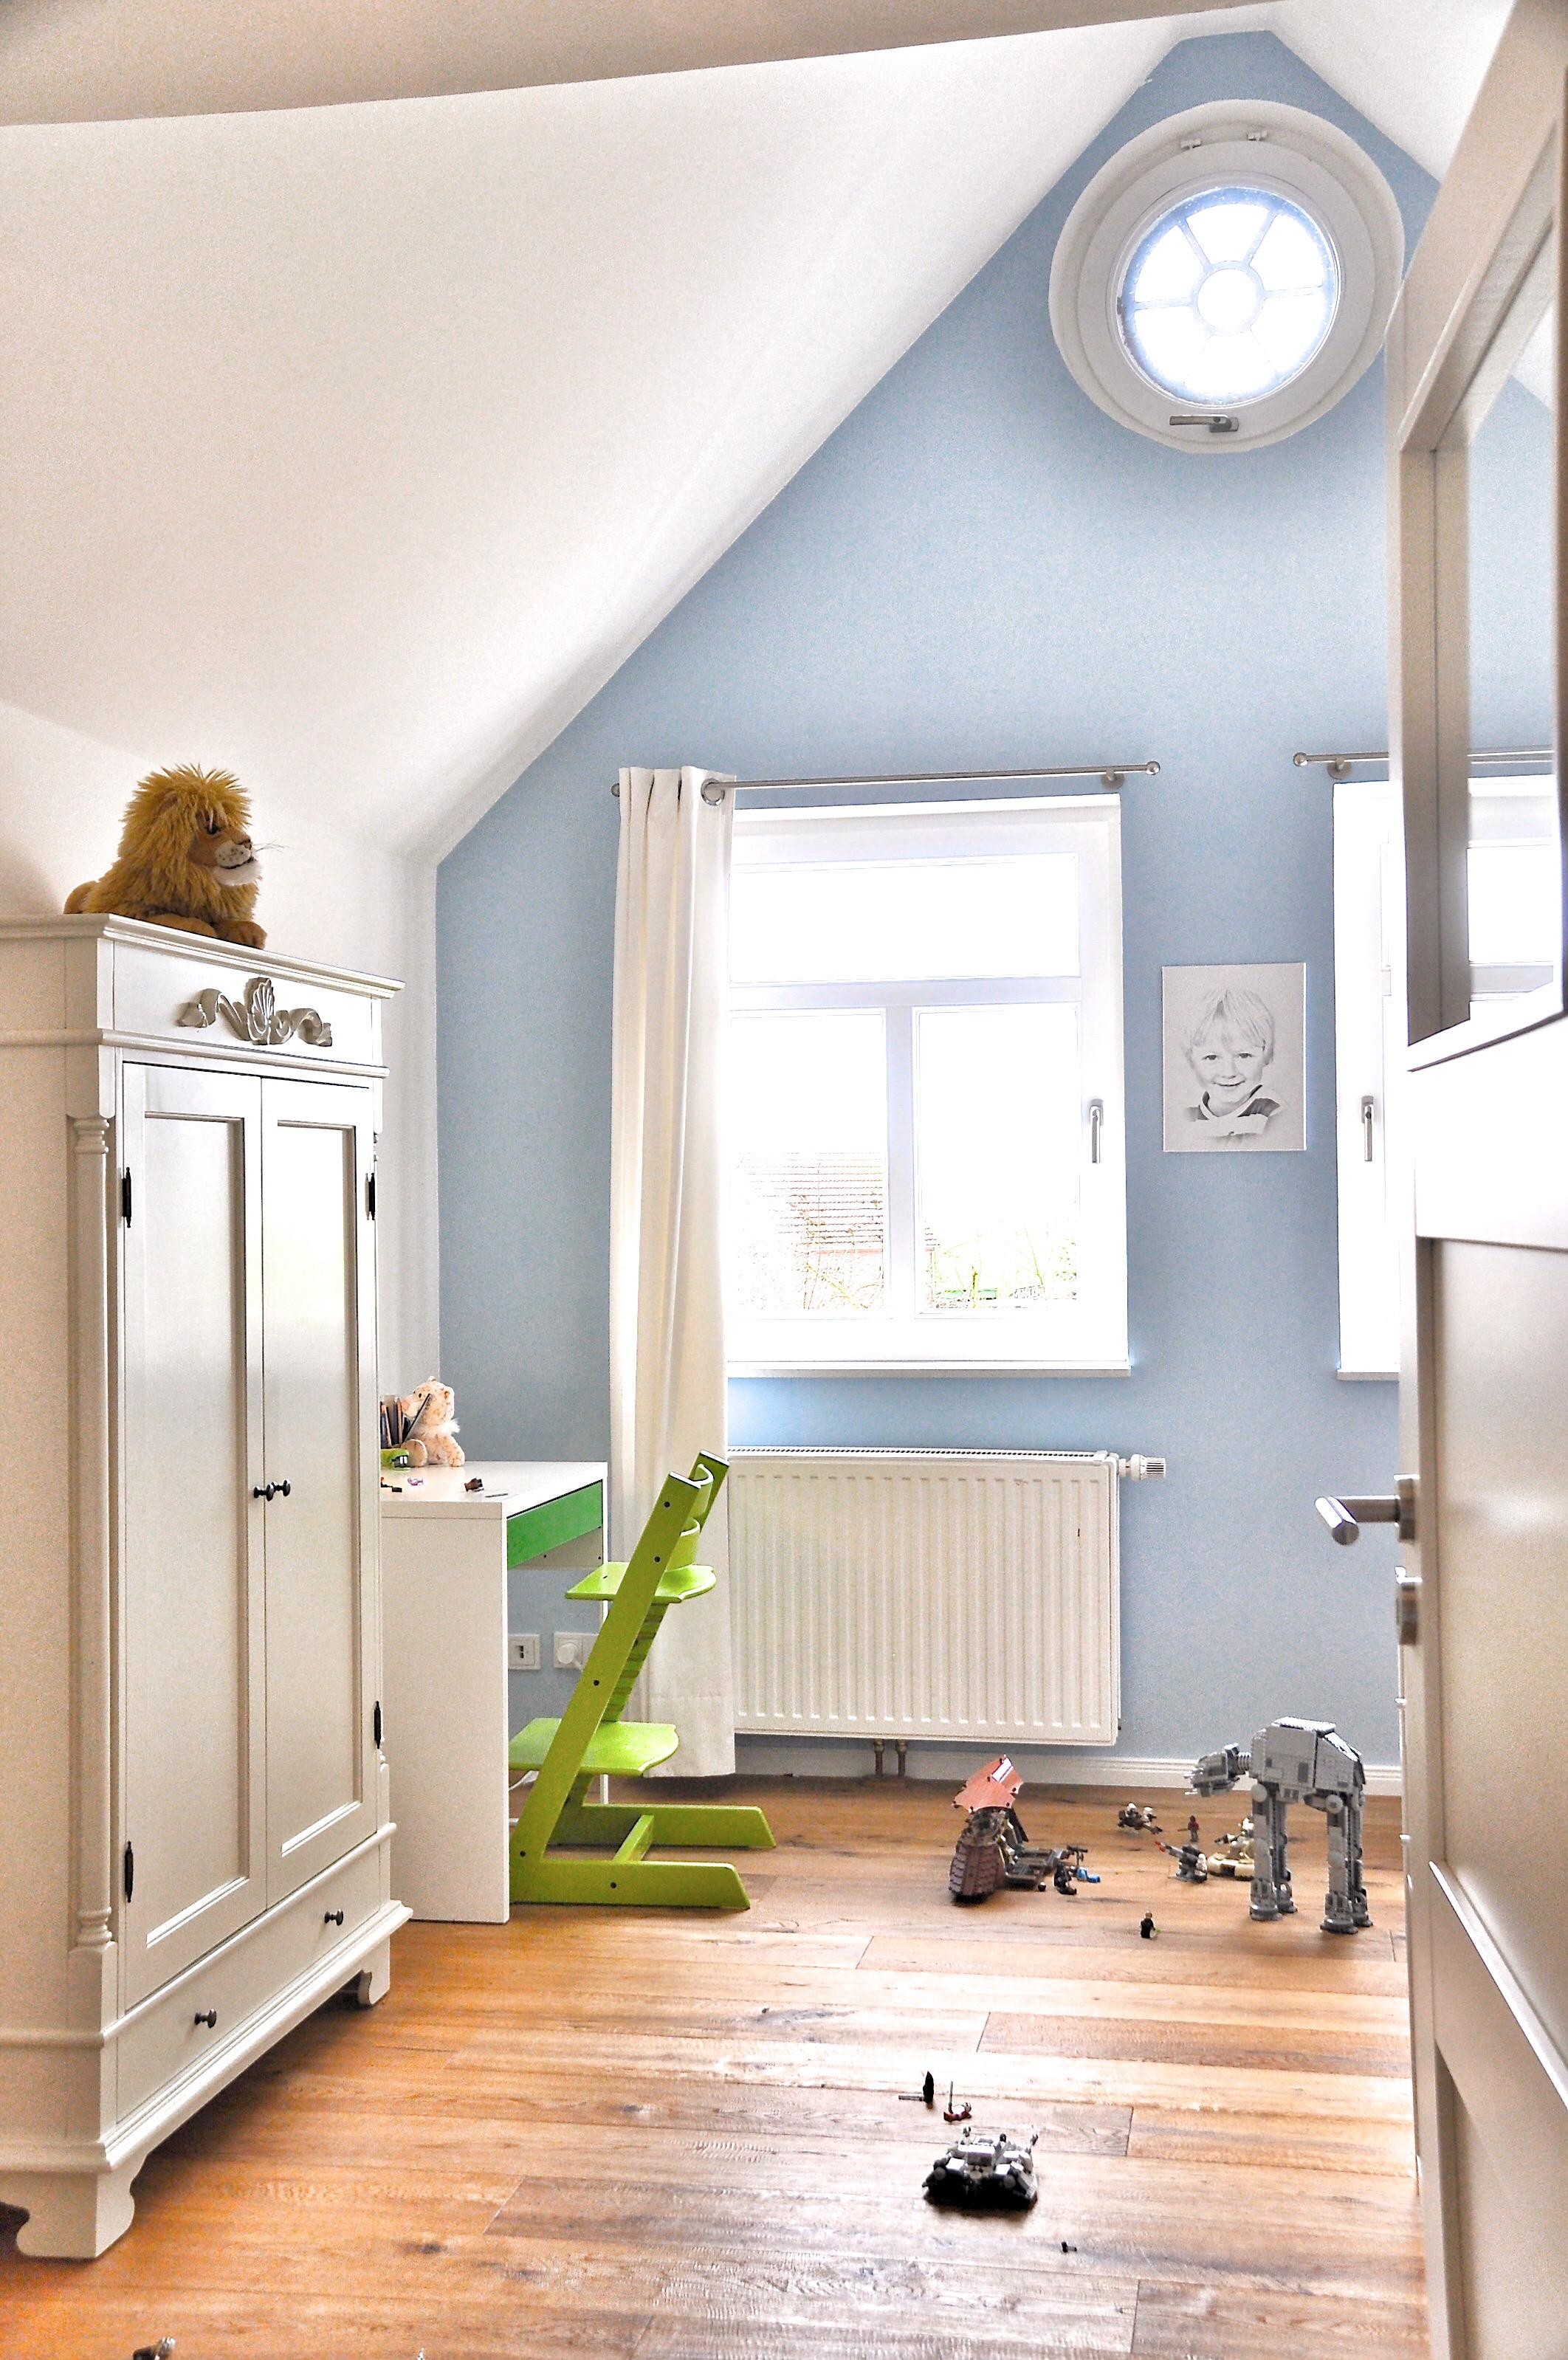 Mein erstes Bild. Das ist das Zimmer meines jüngeren Sohnes - noch hellblau :)
#kinderzimmer #hellblau